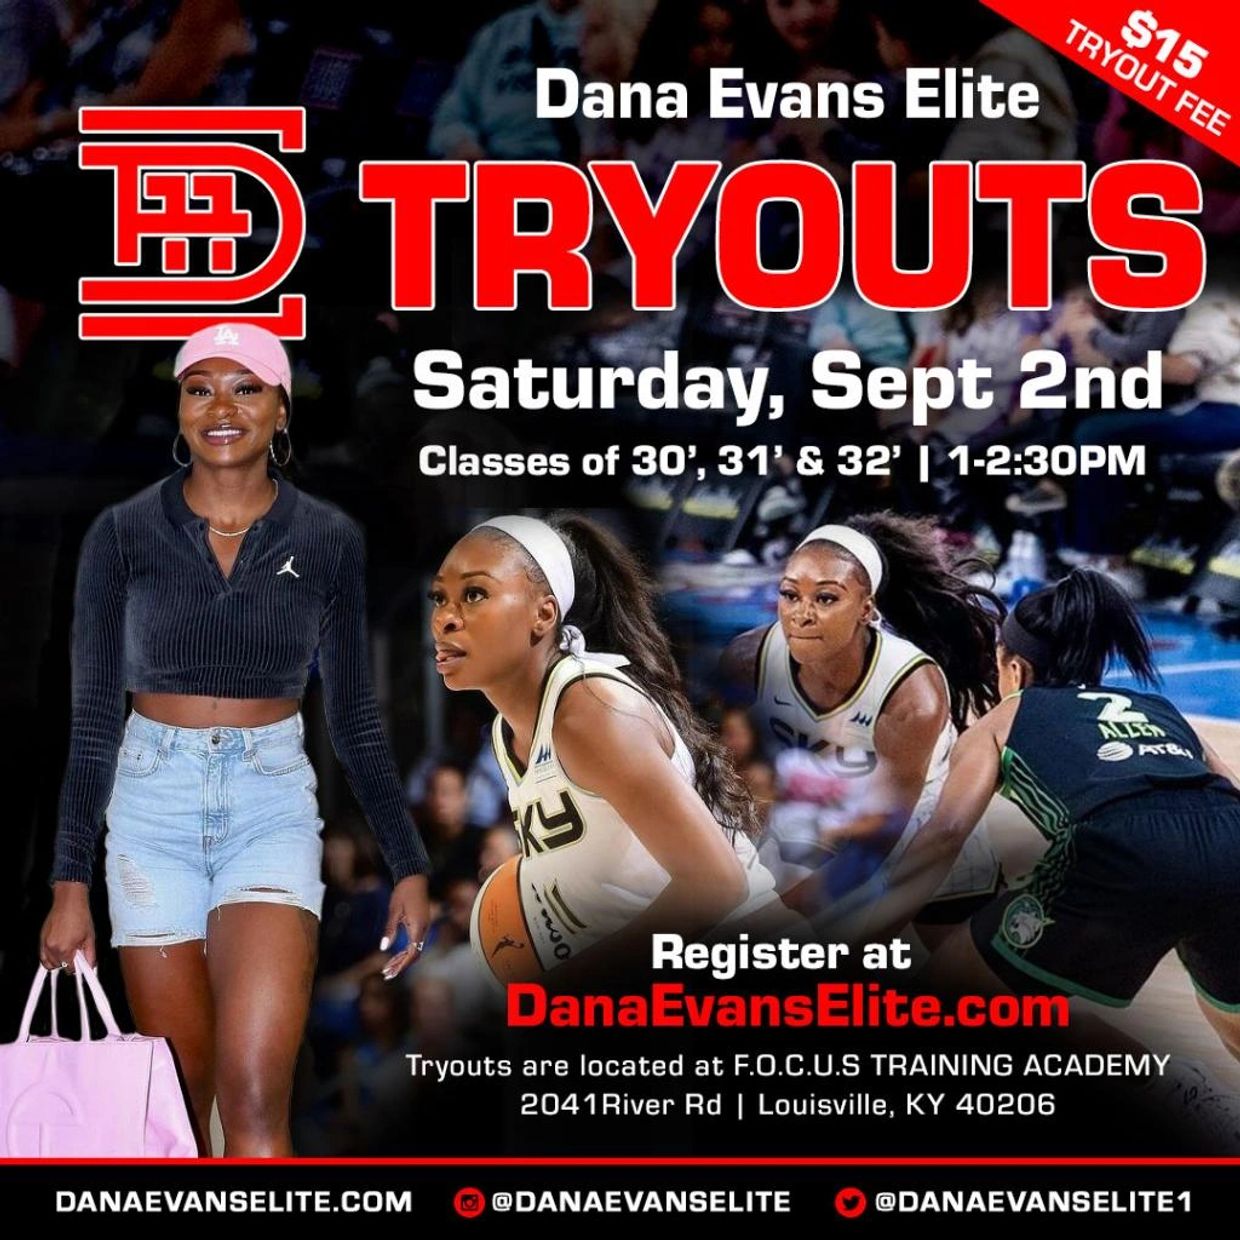 Dana Evans Elite Basketball